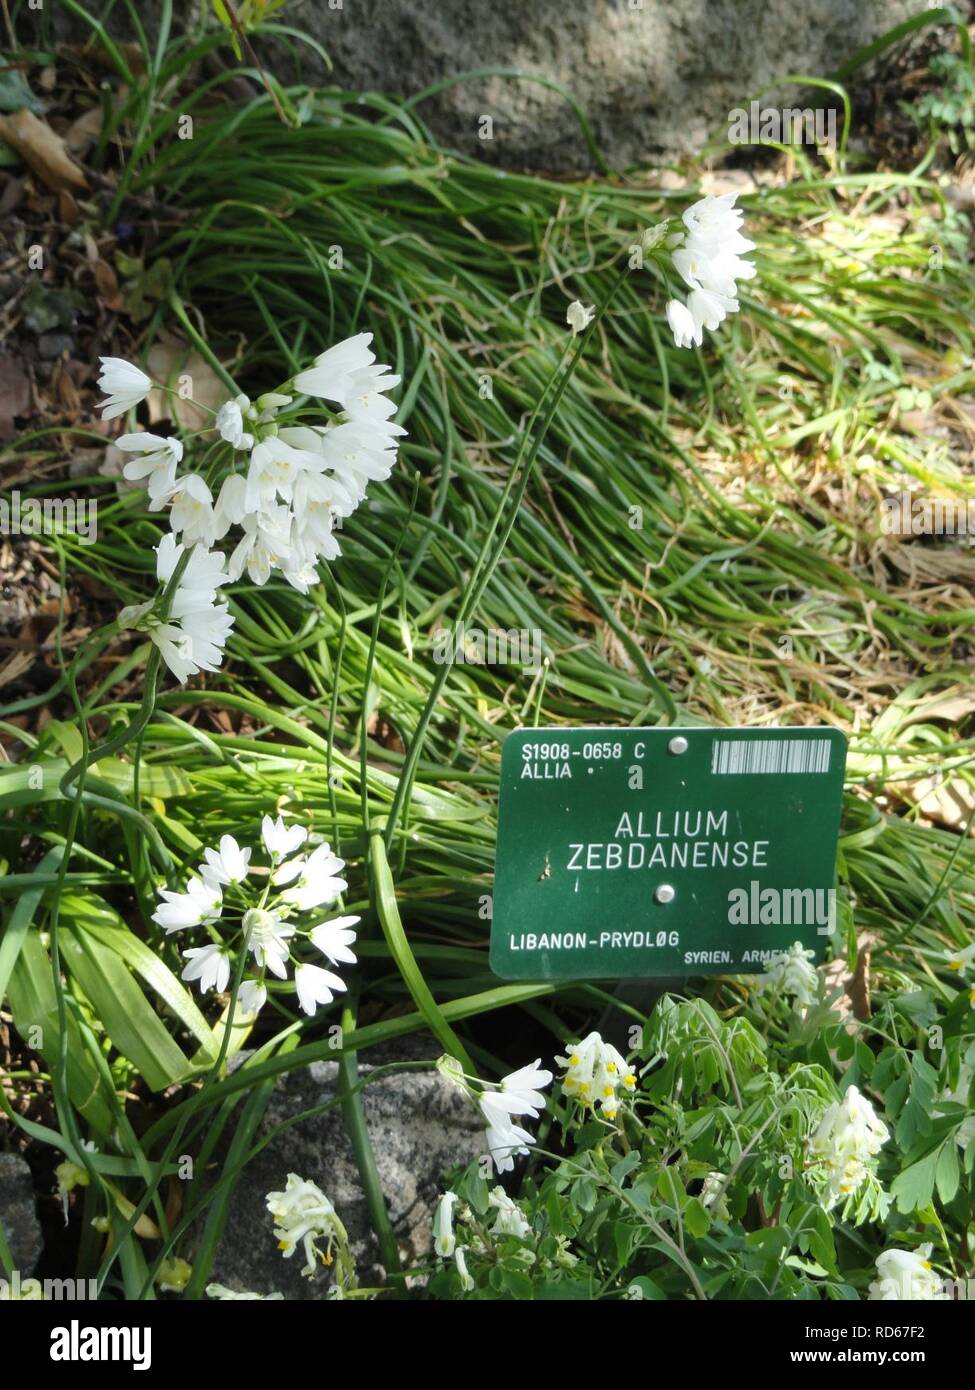 Allium zebdanense - Copenhagen Botanical Garden - Stock Photo